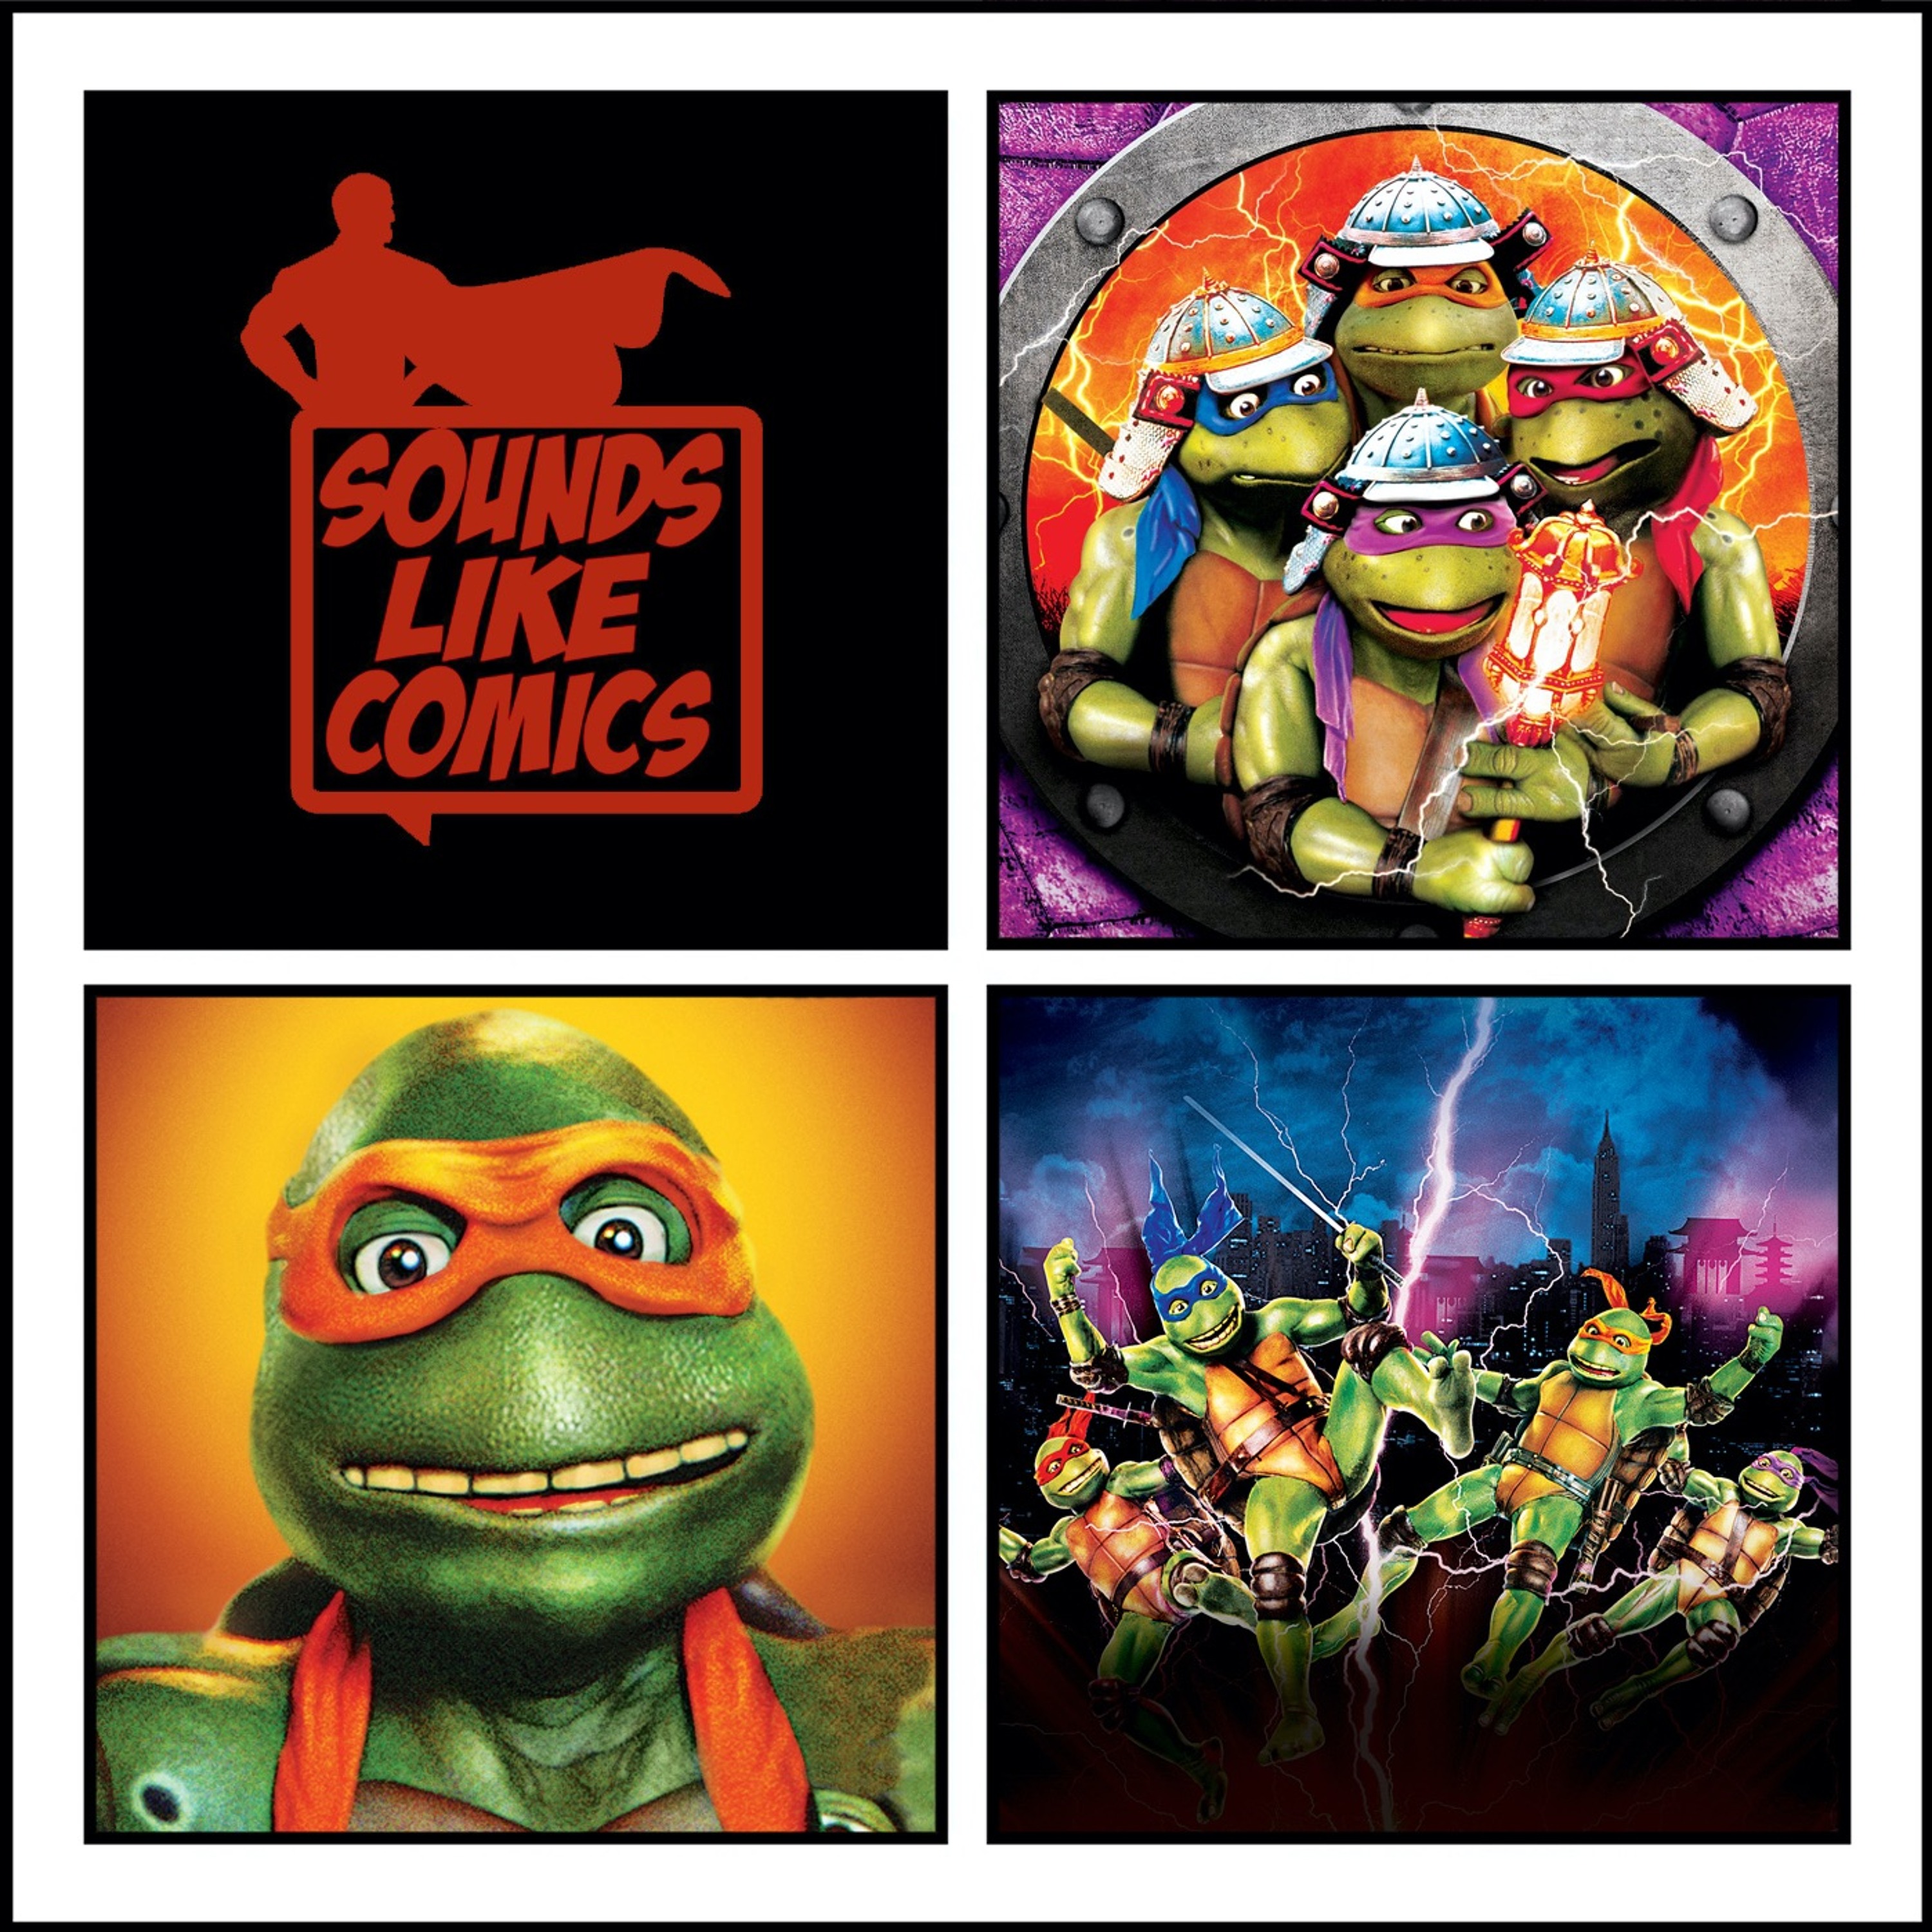 Sounds Like Comics Ep 214 - Teenage Mutant Ninja Turtles III (Movie 1993)